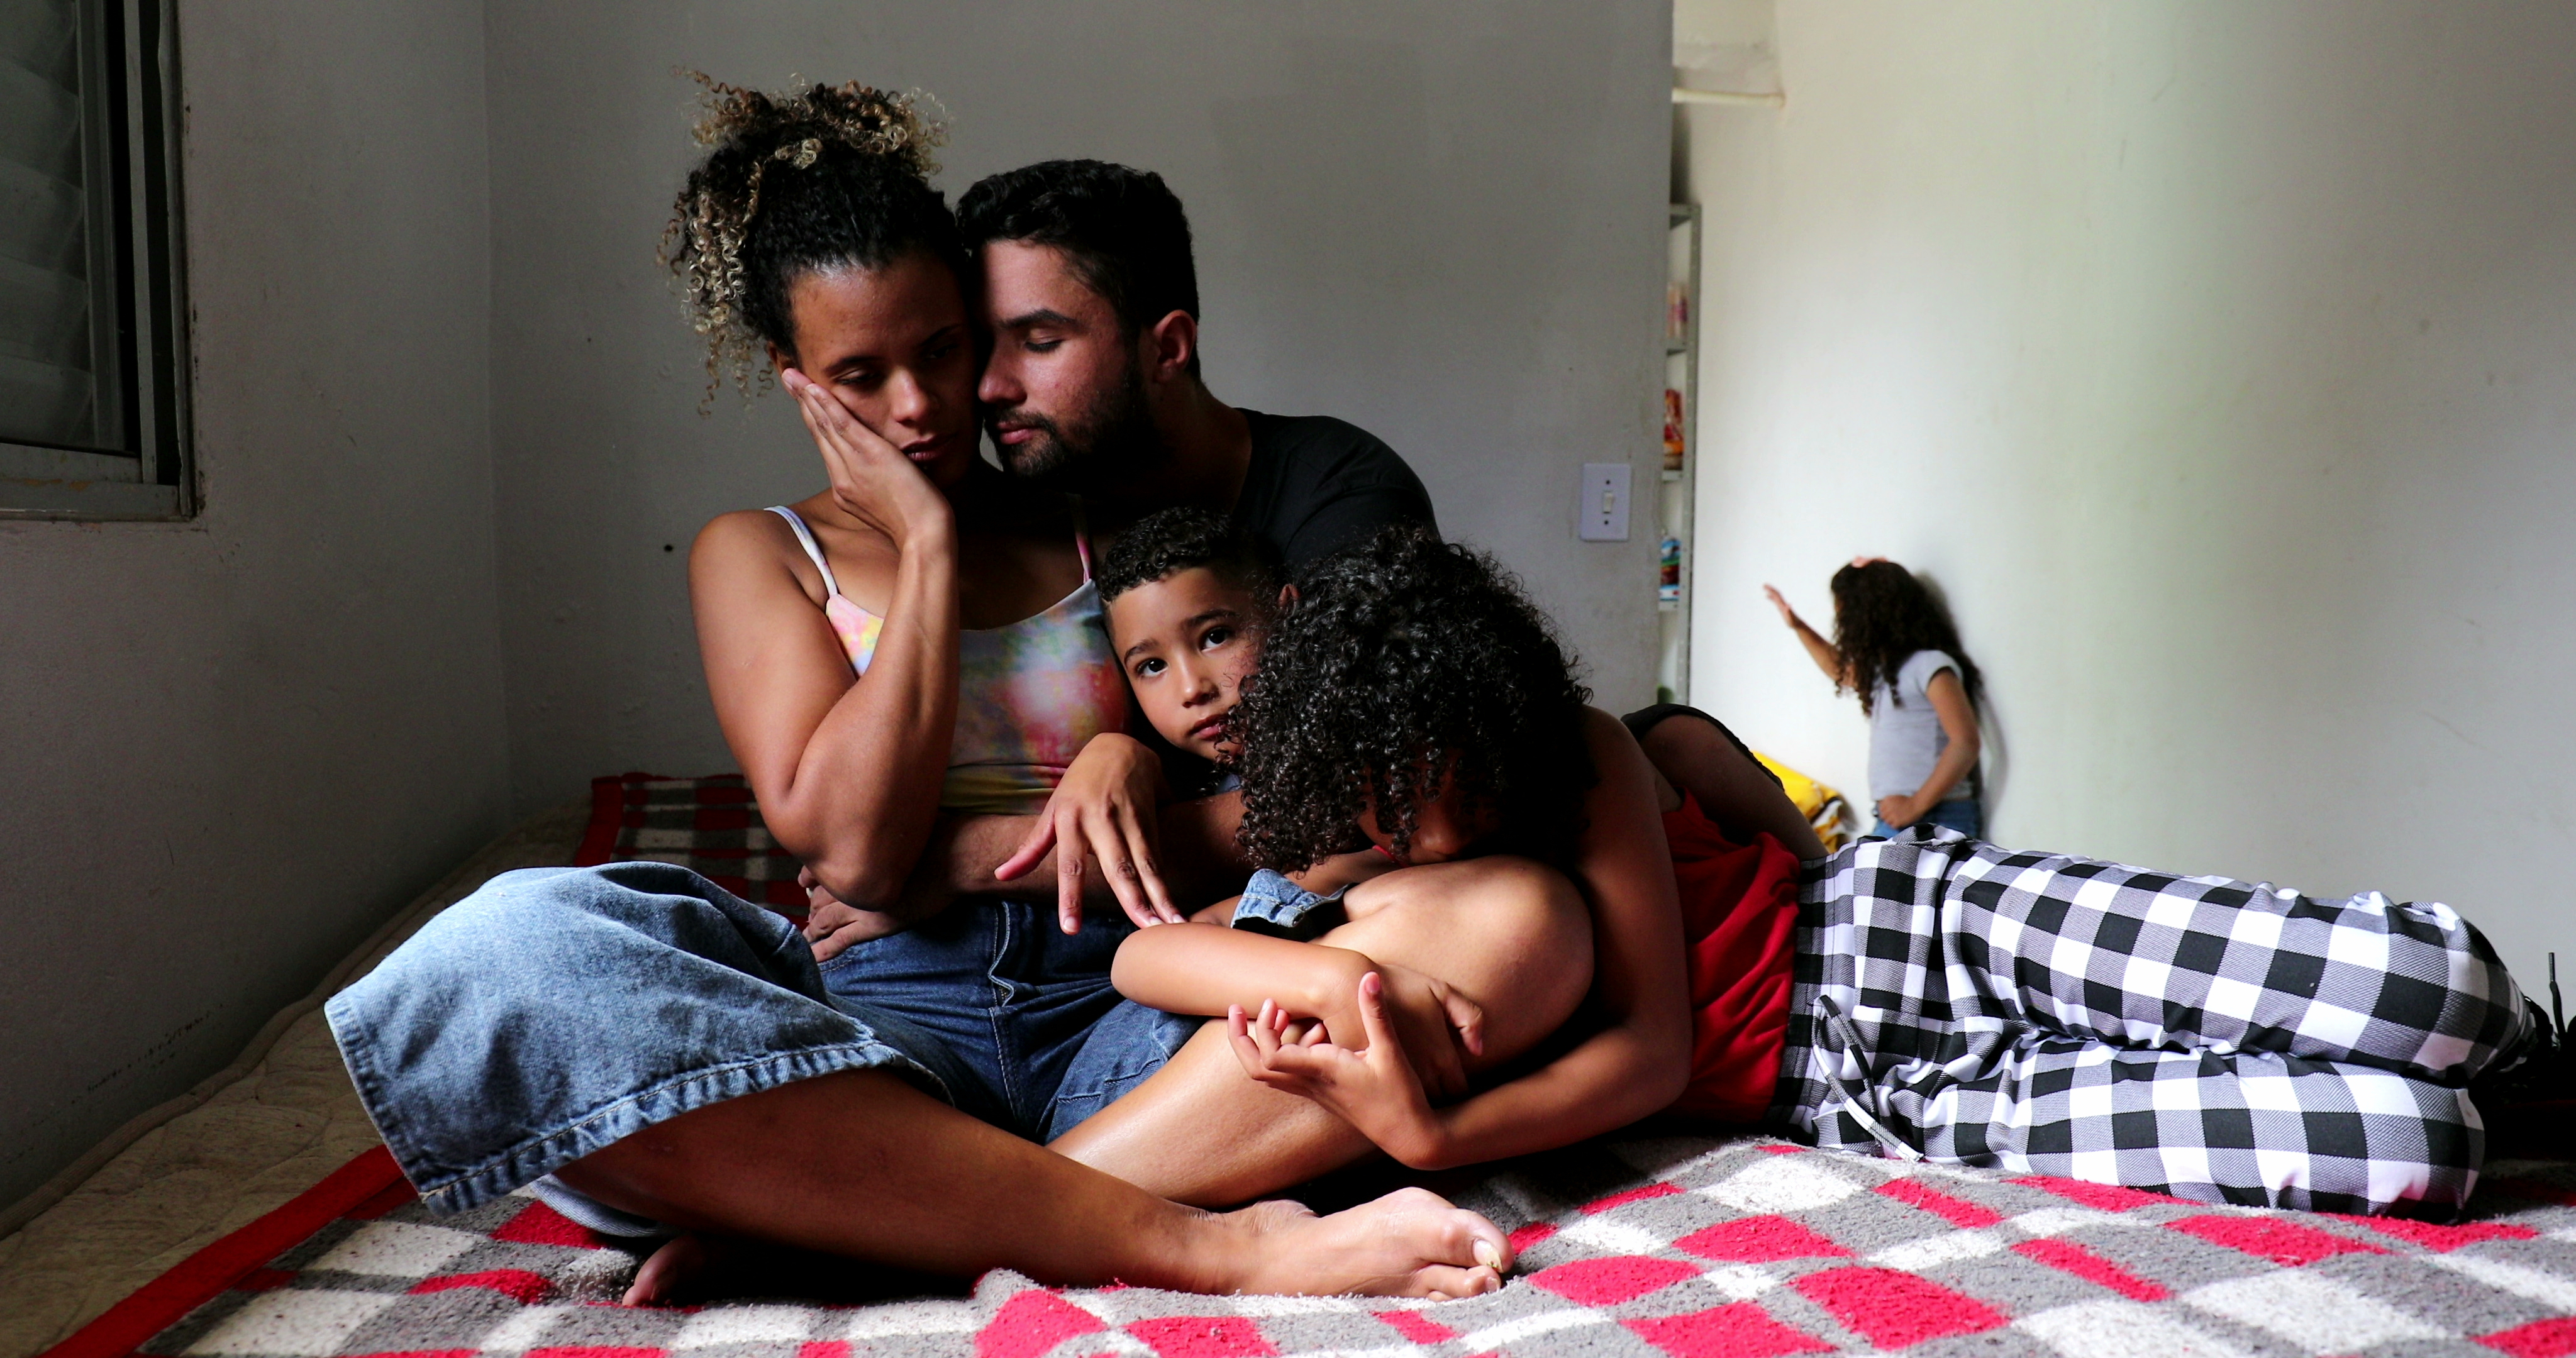 Ein Mann, eine Frau und zwei Kinder beim Kuscheln | Quelle: Shutterstock